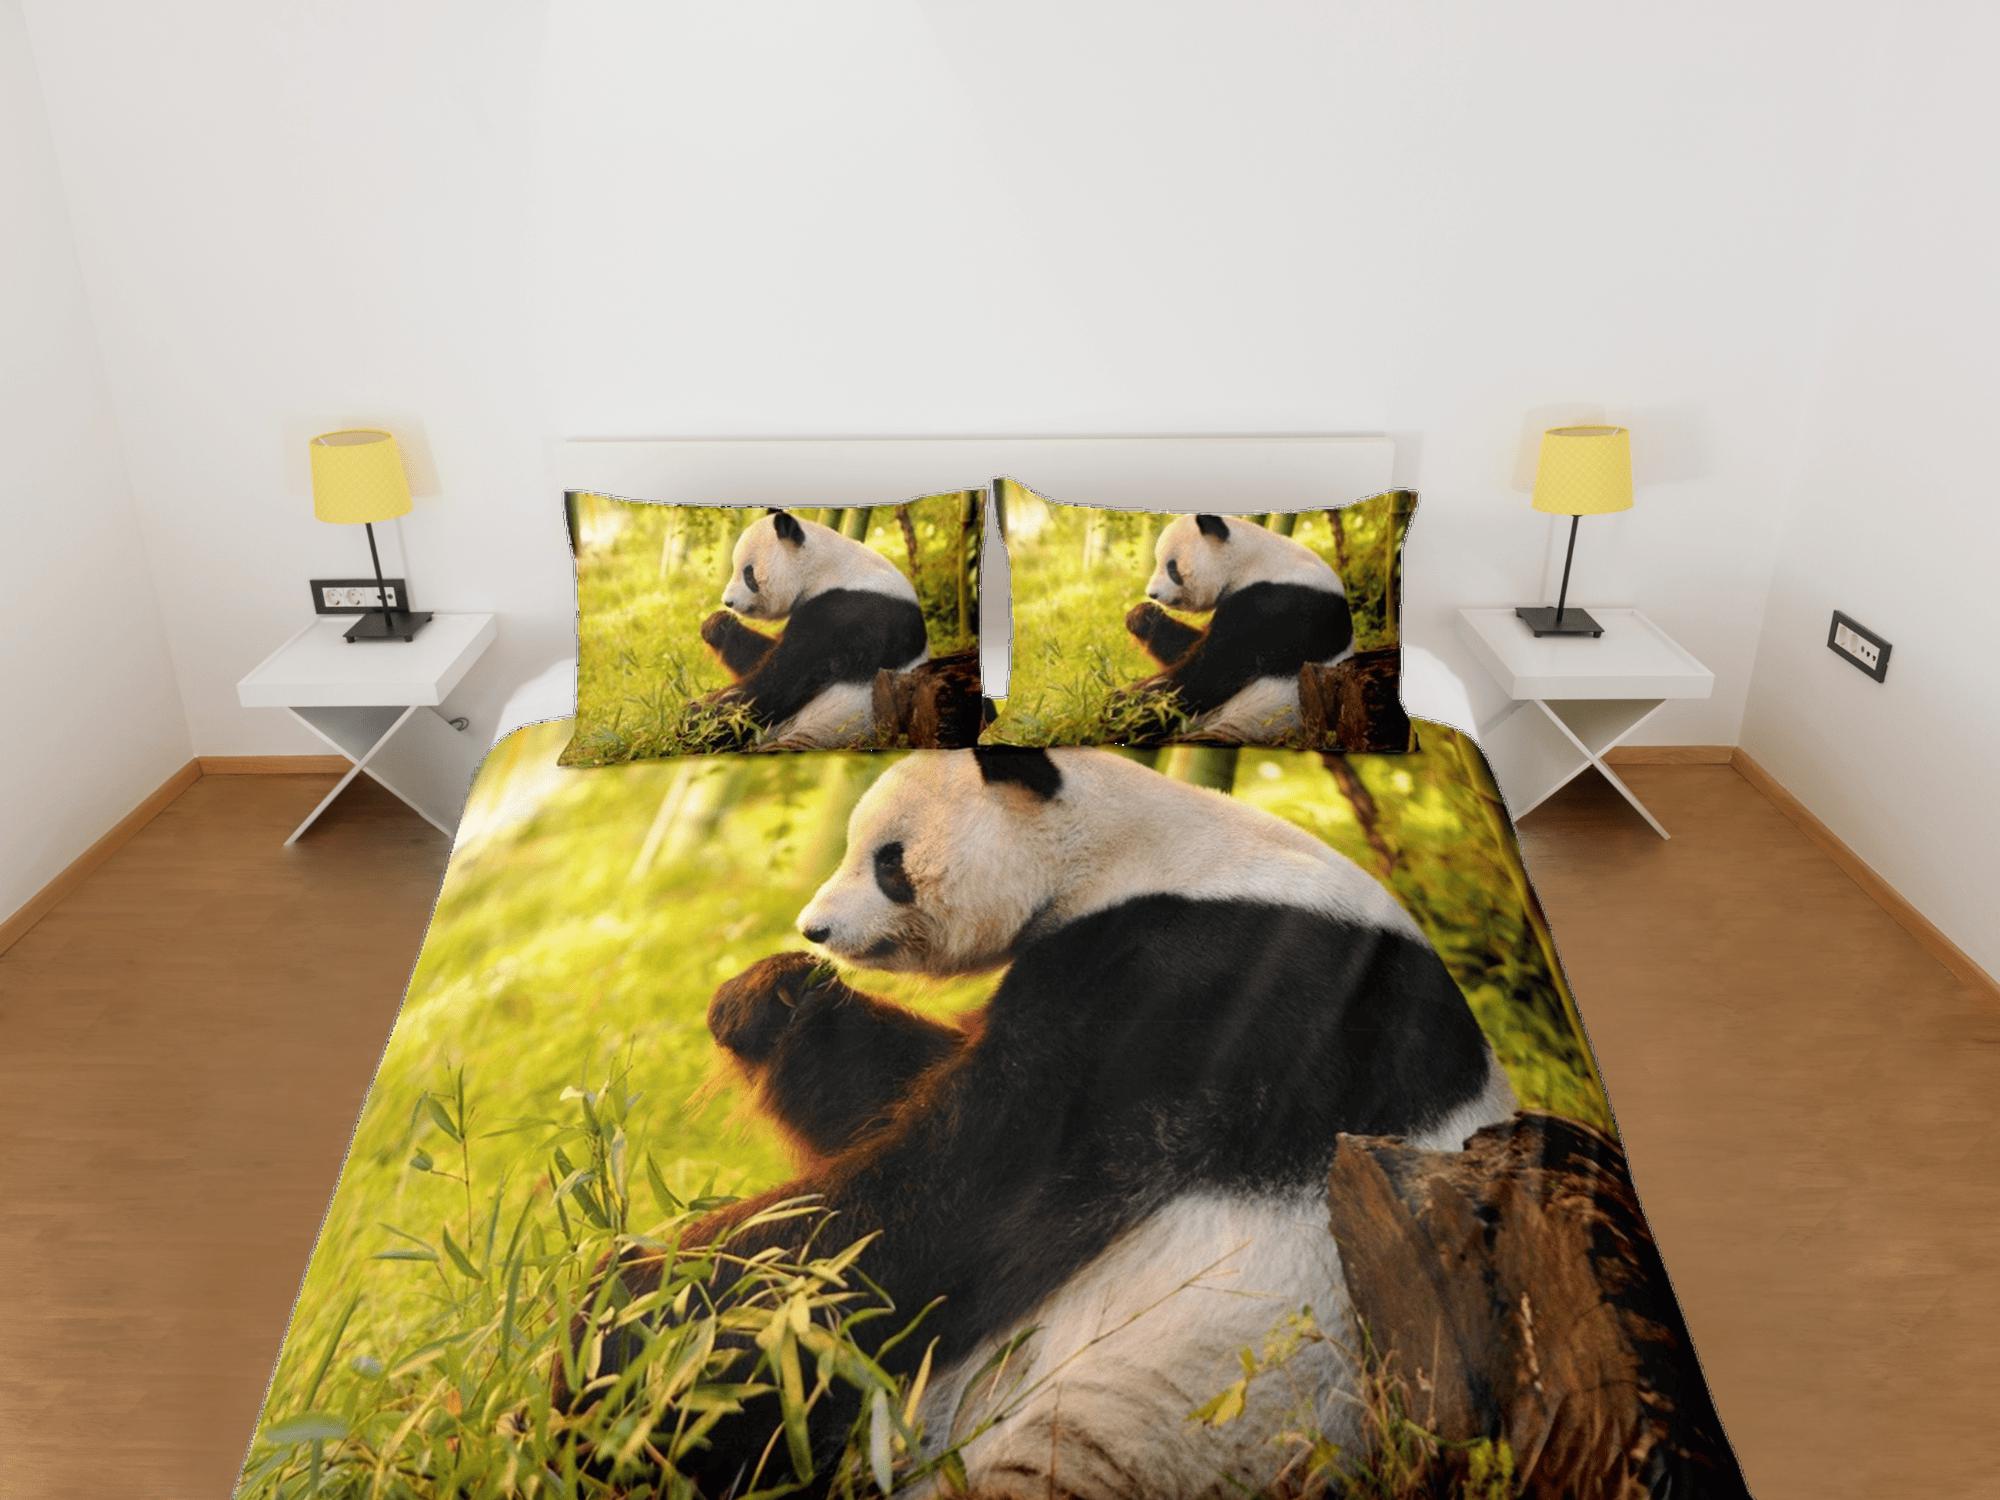 daintyduvet Cool panda duvet cover set for kids, bedding set full, king, queen, dorm bedding, toddler bedding, aesthetic bedspread, panda lovers gift